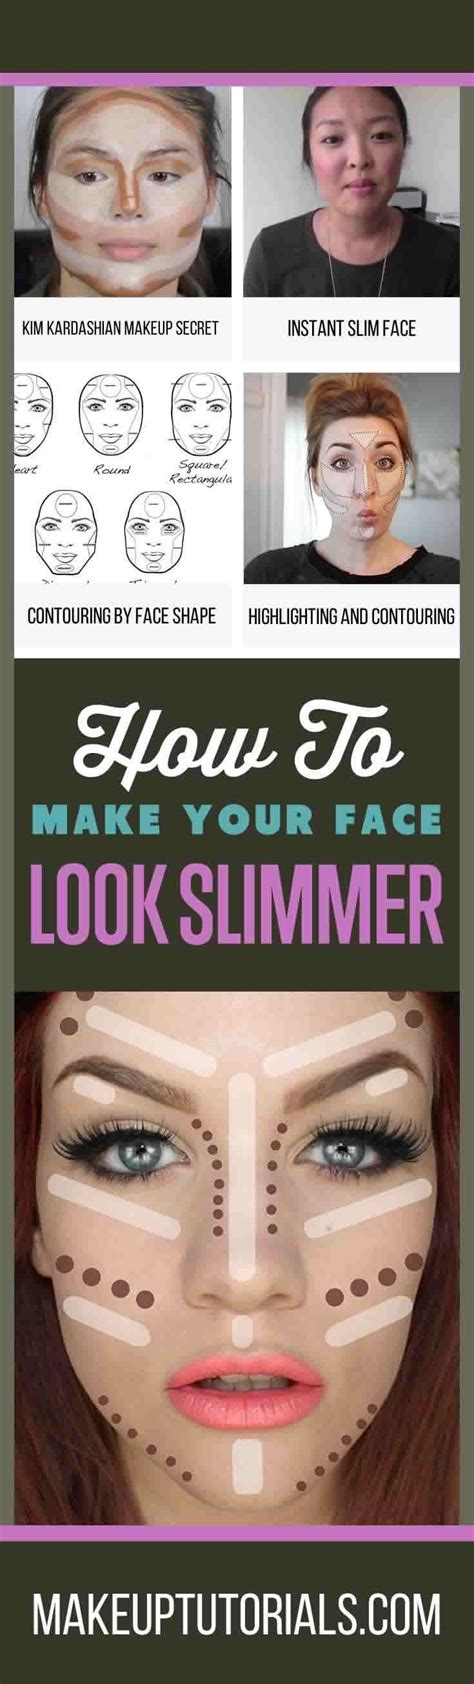 how to make your face thinner with makeup makeup tips contouring contour makeup tutorial